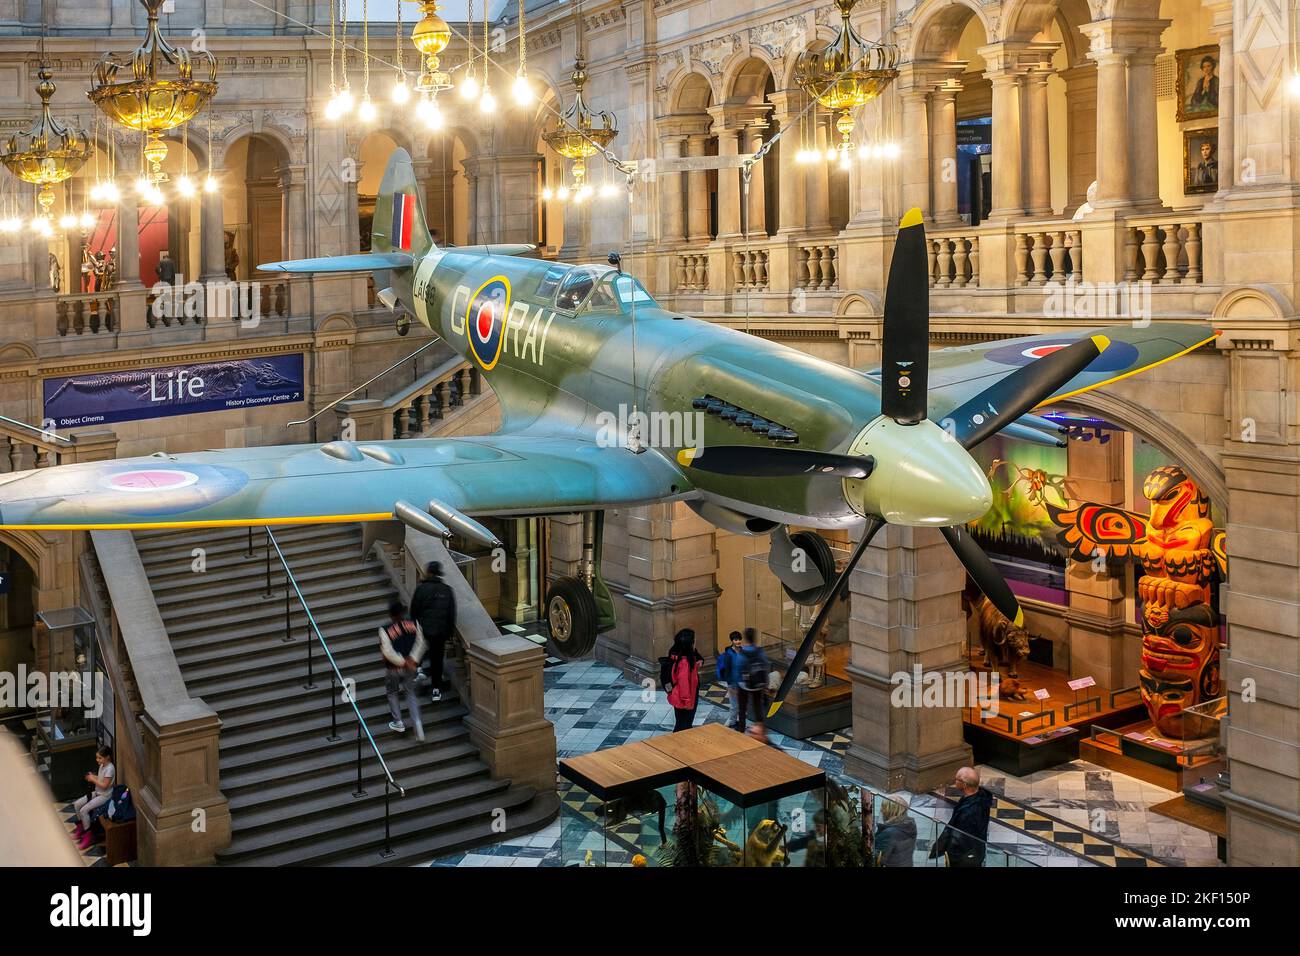 Supermarine Spitfire mk 21, LA198, en exposition au Kelvingrove Museum and Art Gallery Glasgow, Écosse, Royaume-Uni. Le Spitfire a volé avec humour Banque D'Images